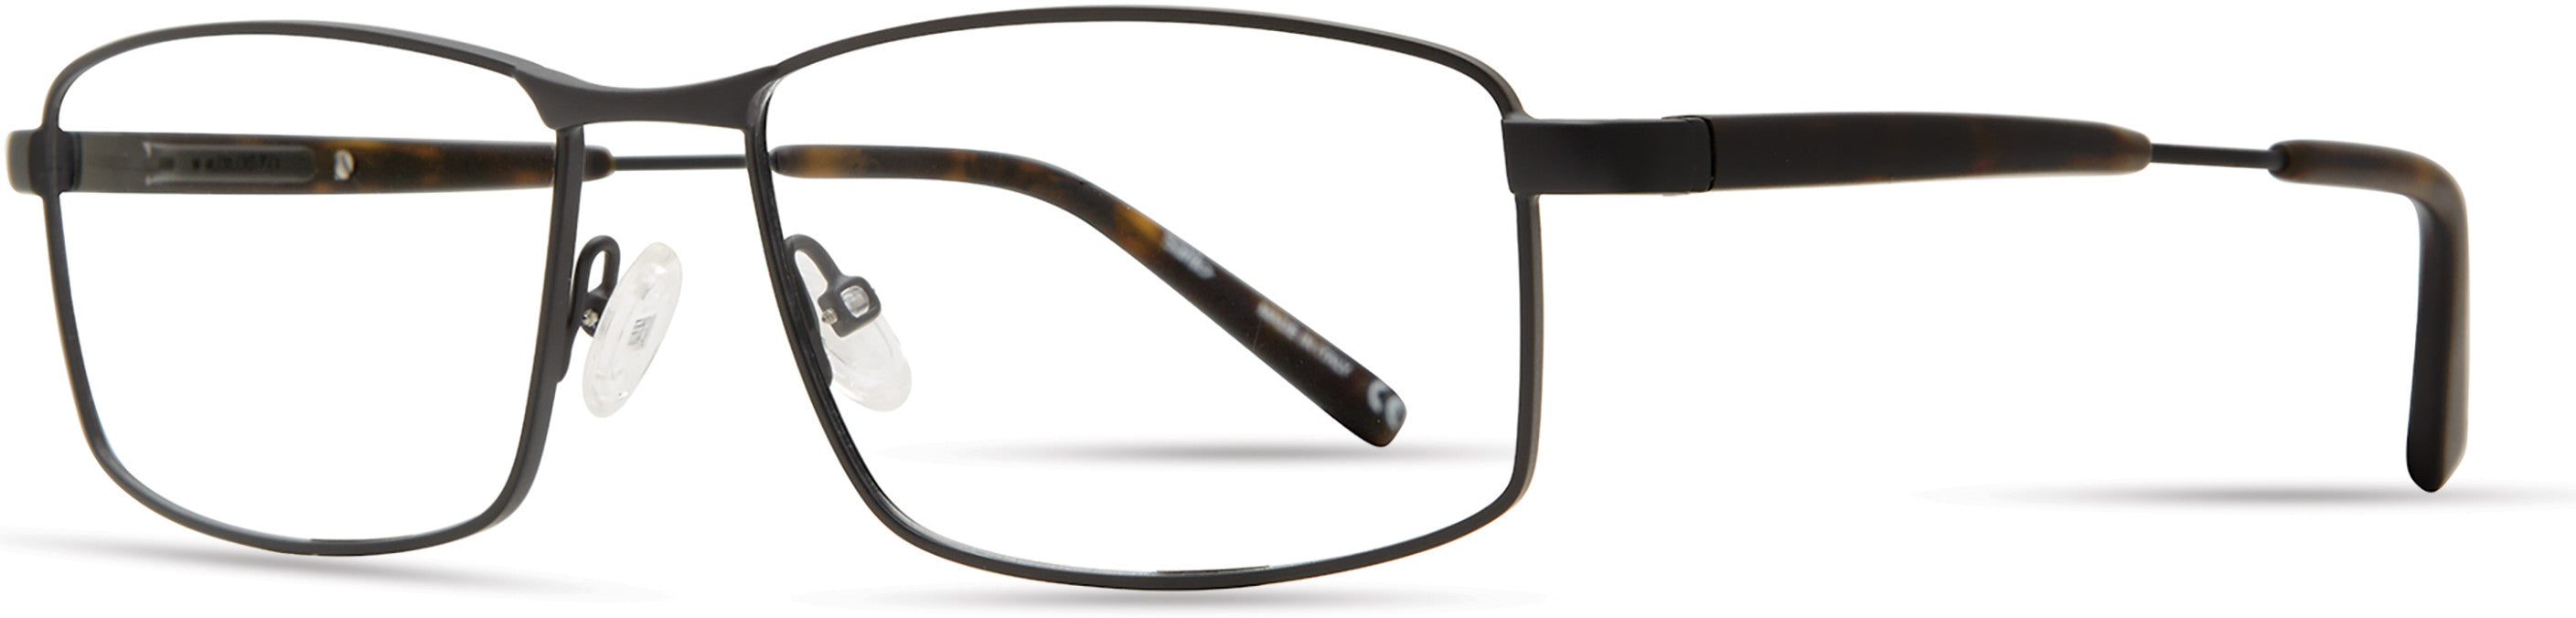  Elasta 7235 Rectangular Eyeglasses 0003-0003  Matte Black (00 Demo Lens)